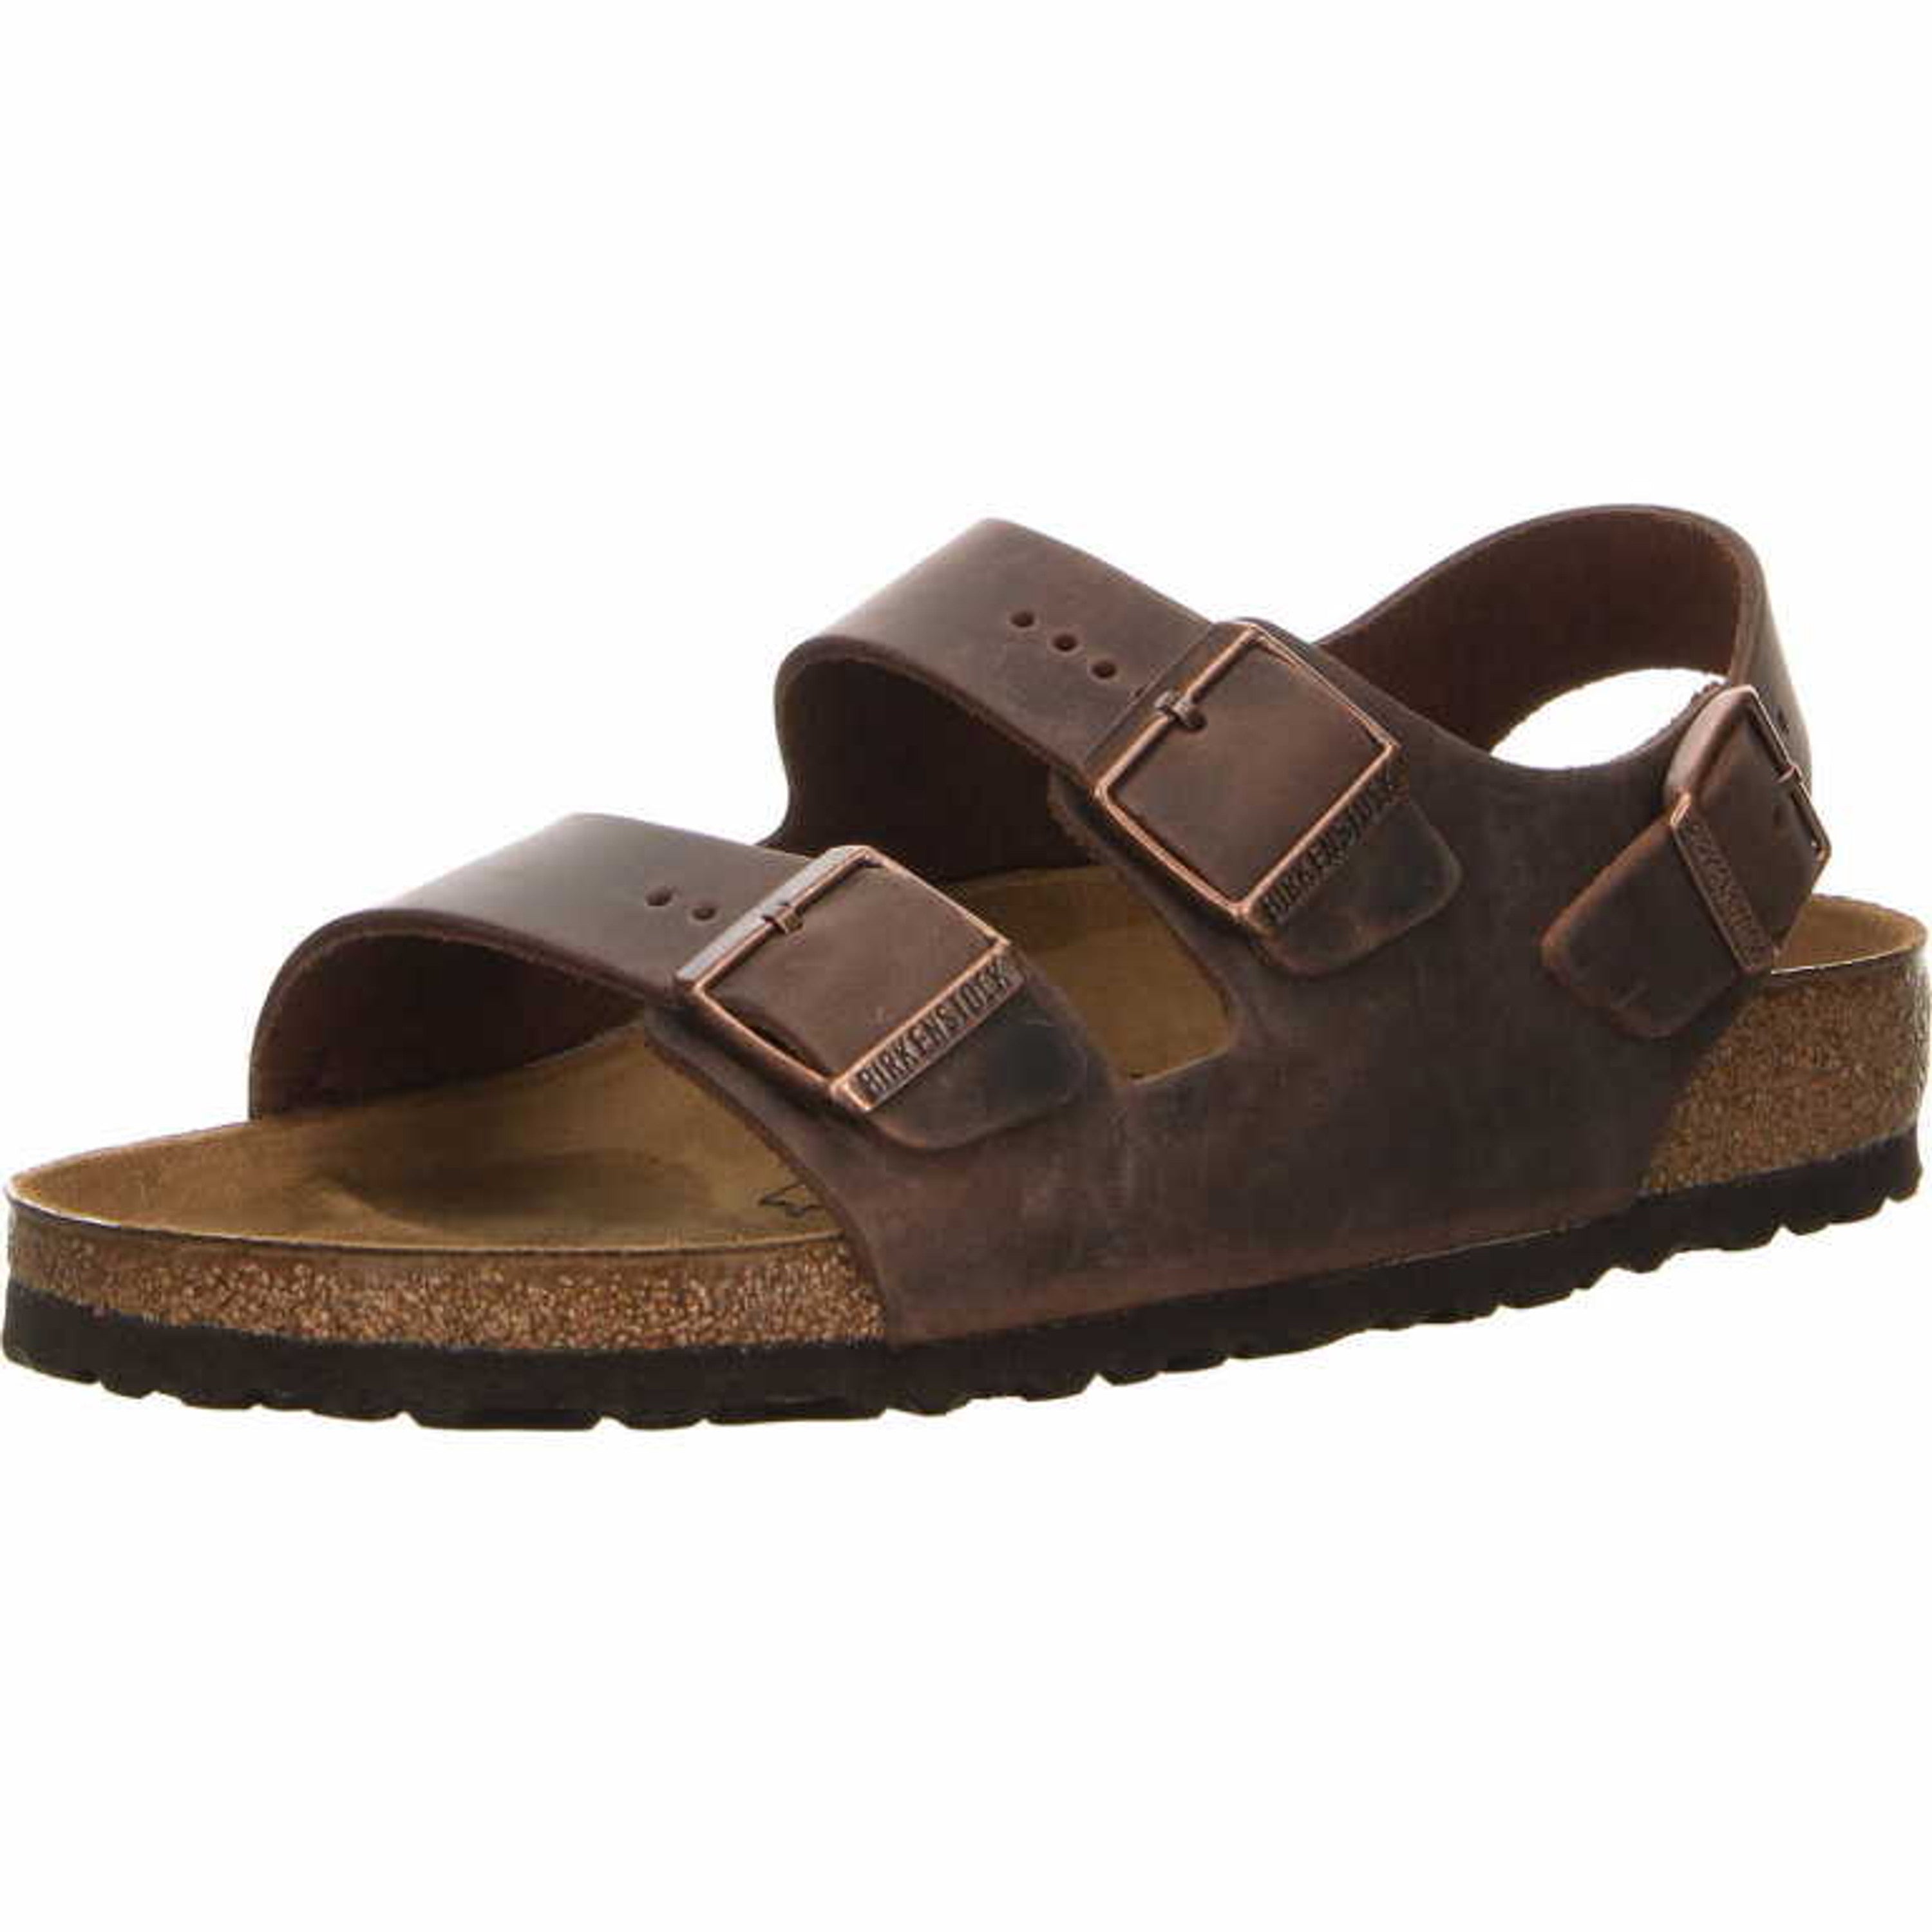 Birkenstock comfort sandals Milano dark, brown Mix - Bartel-Shop